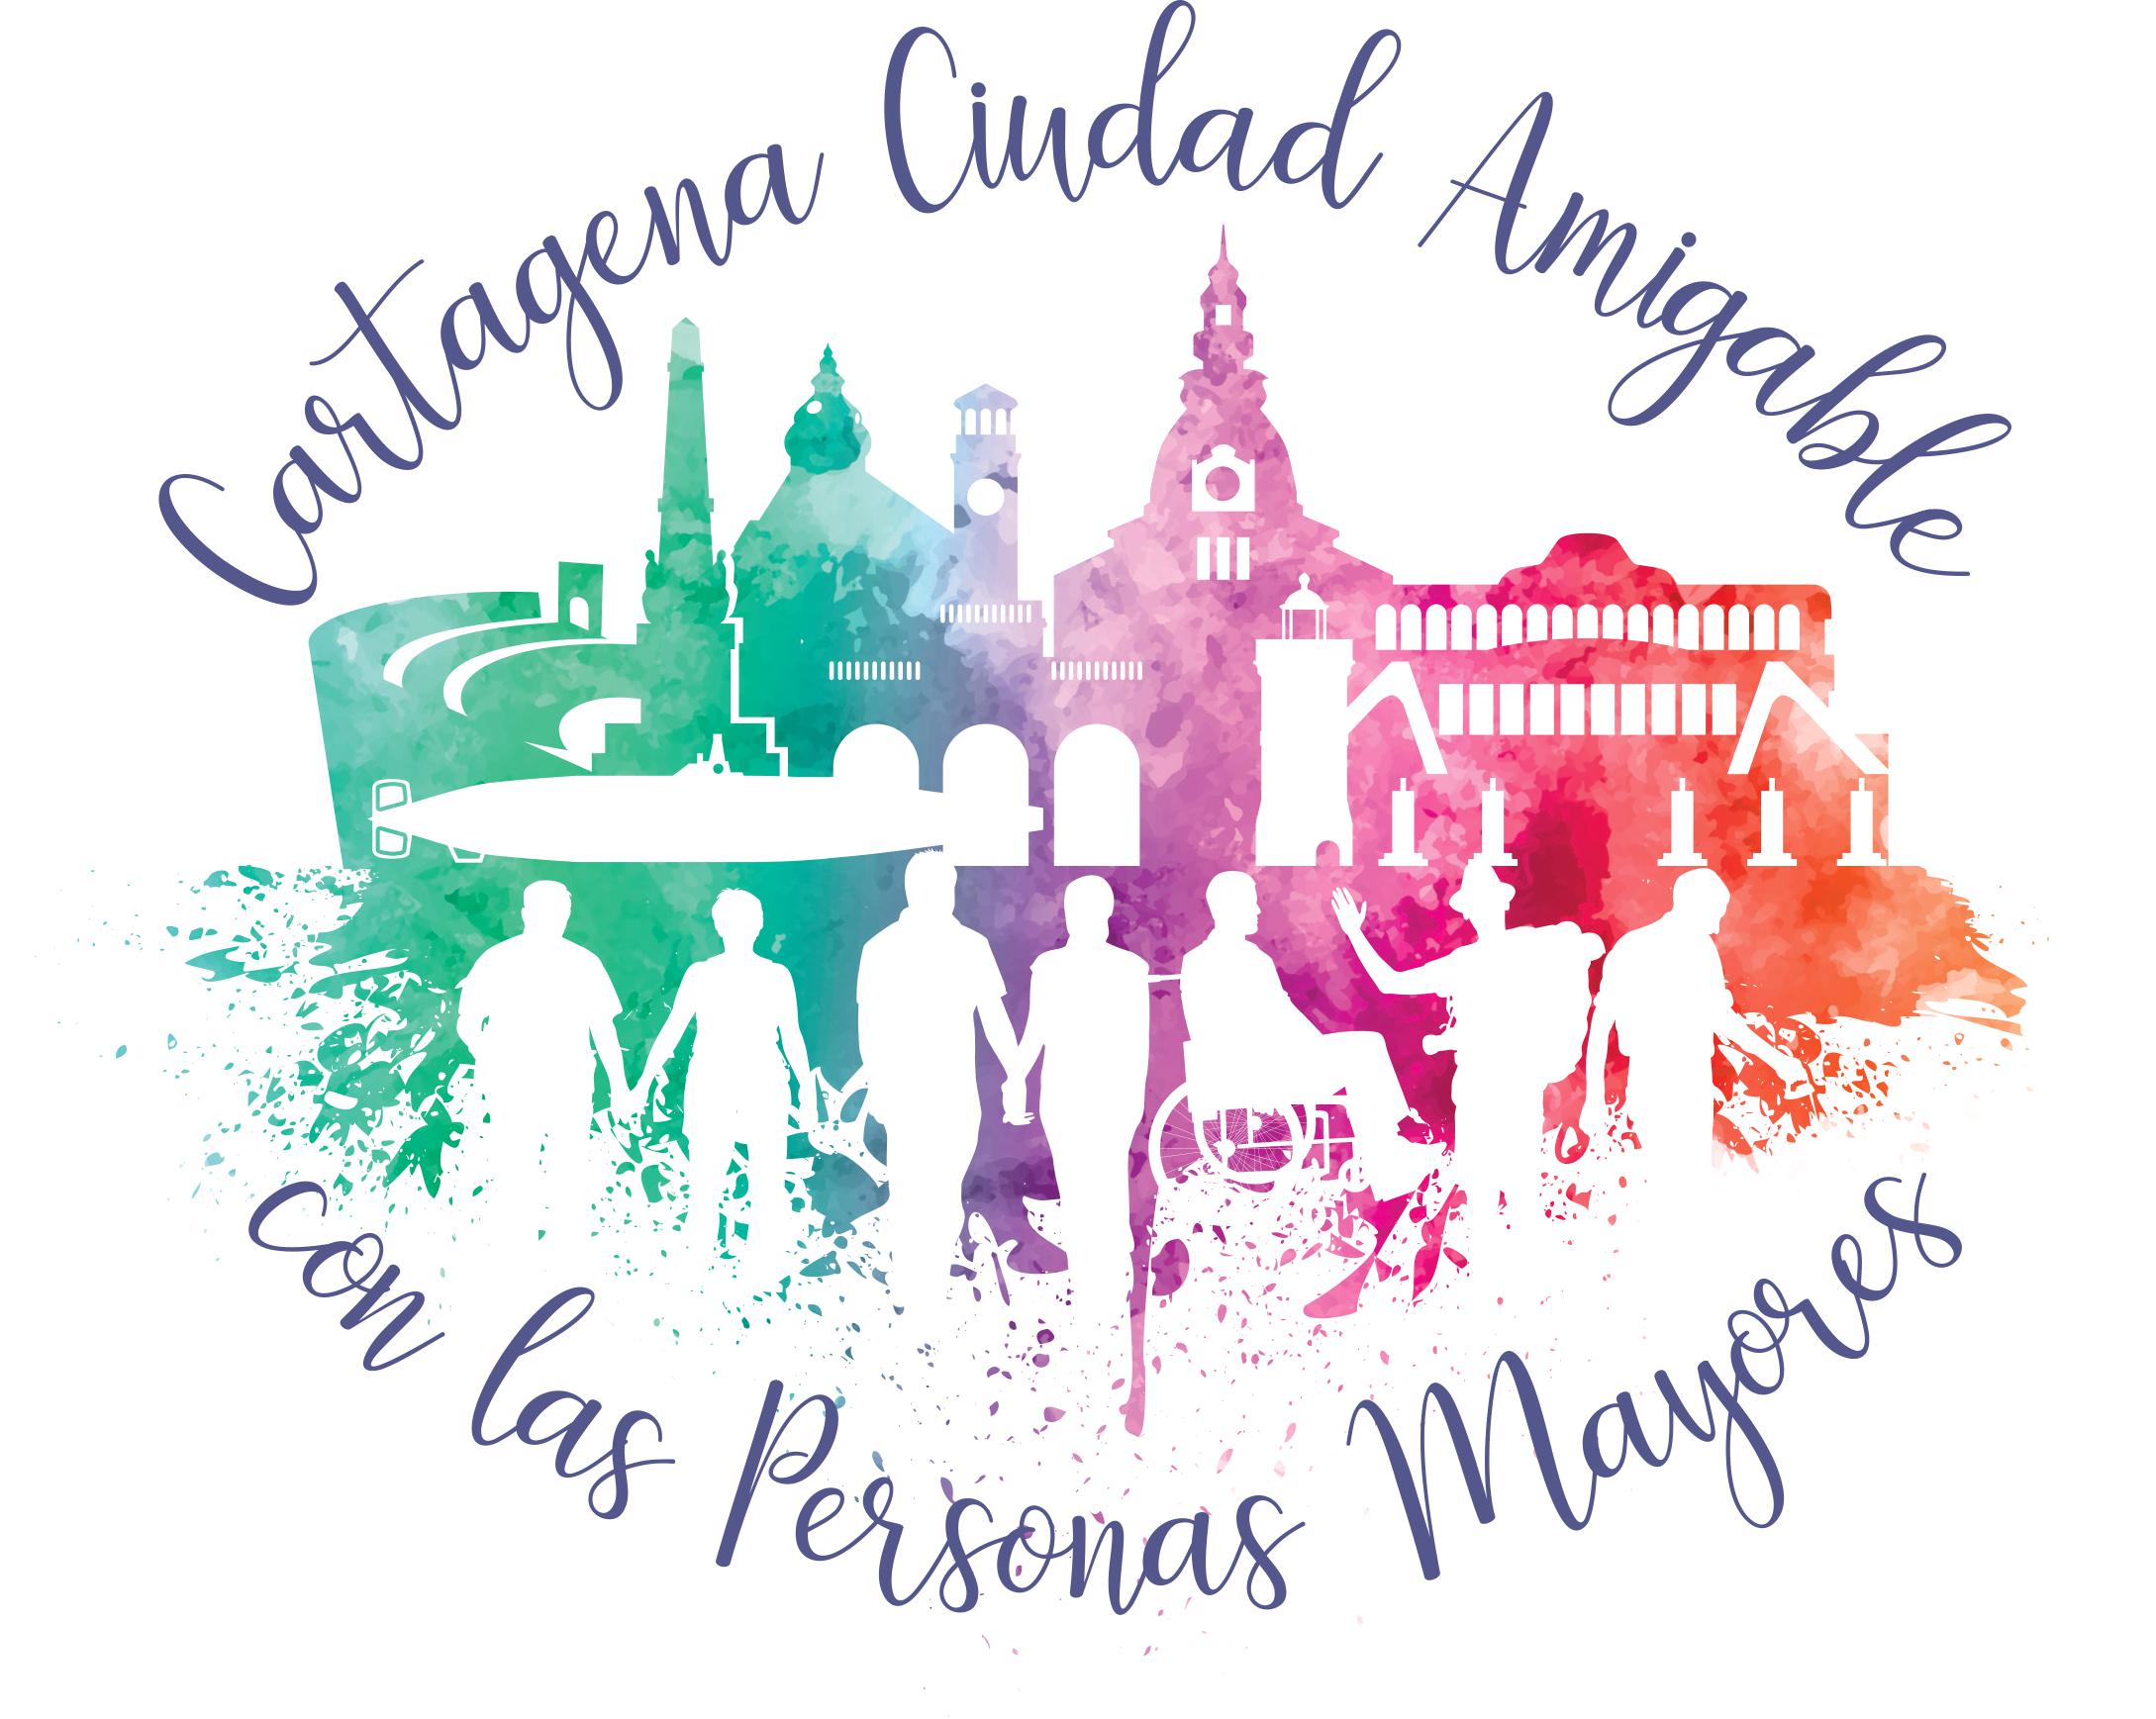 Reunin tcnicos del Ayuntamiento Proyecto 'Cartagena, Ciudad Amigable con las Personas Mayores'